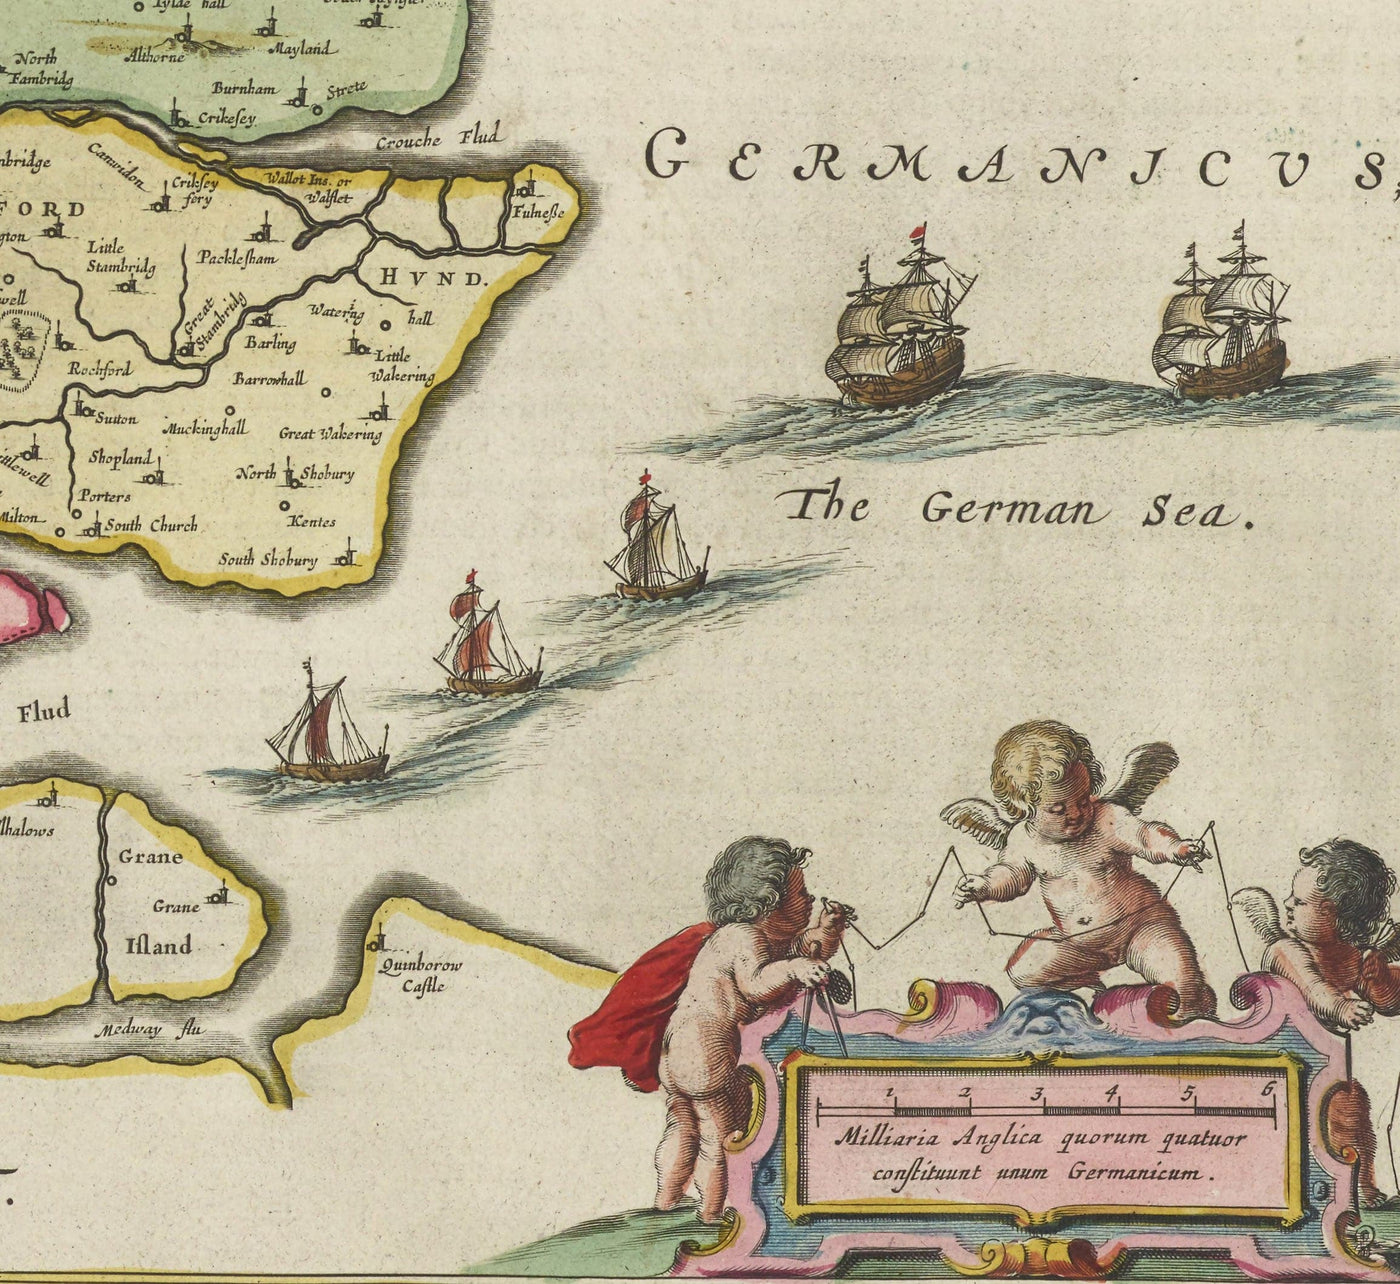 Alte Karte von Essex, 1665 von Joan Blaeu - Southend, Colchester, Chelmsford, Basildon, Romford, Braintree, North London